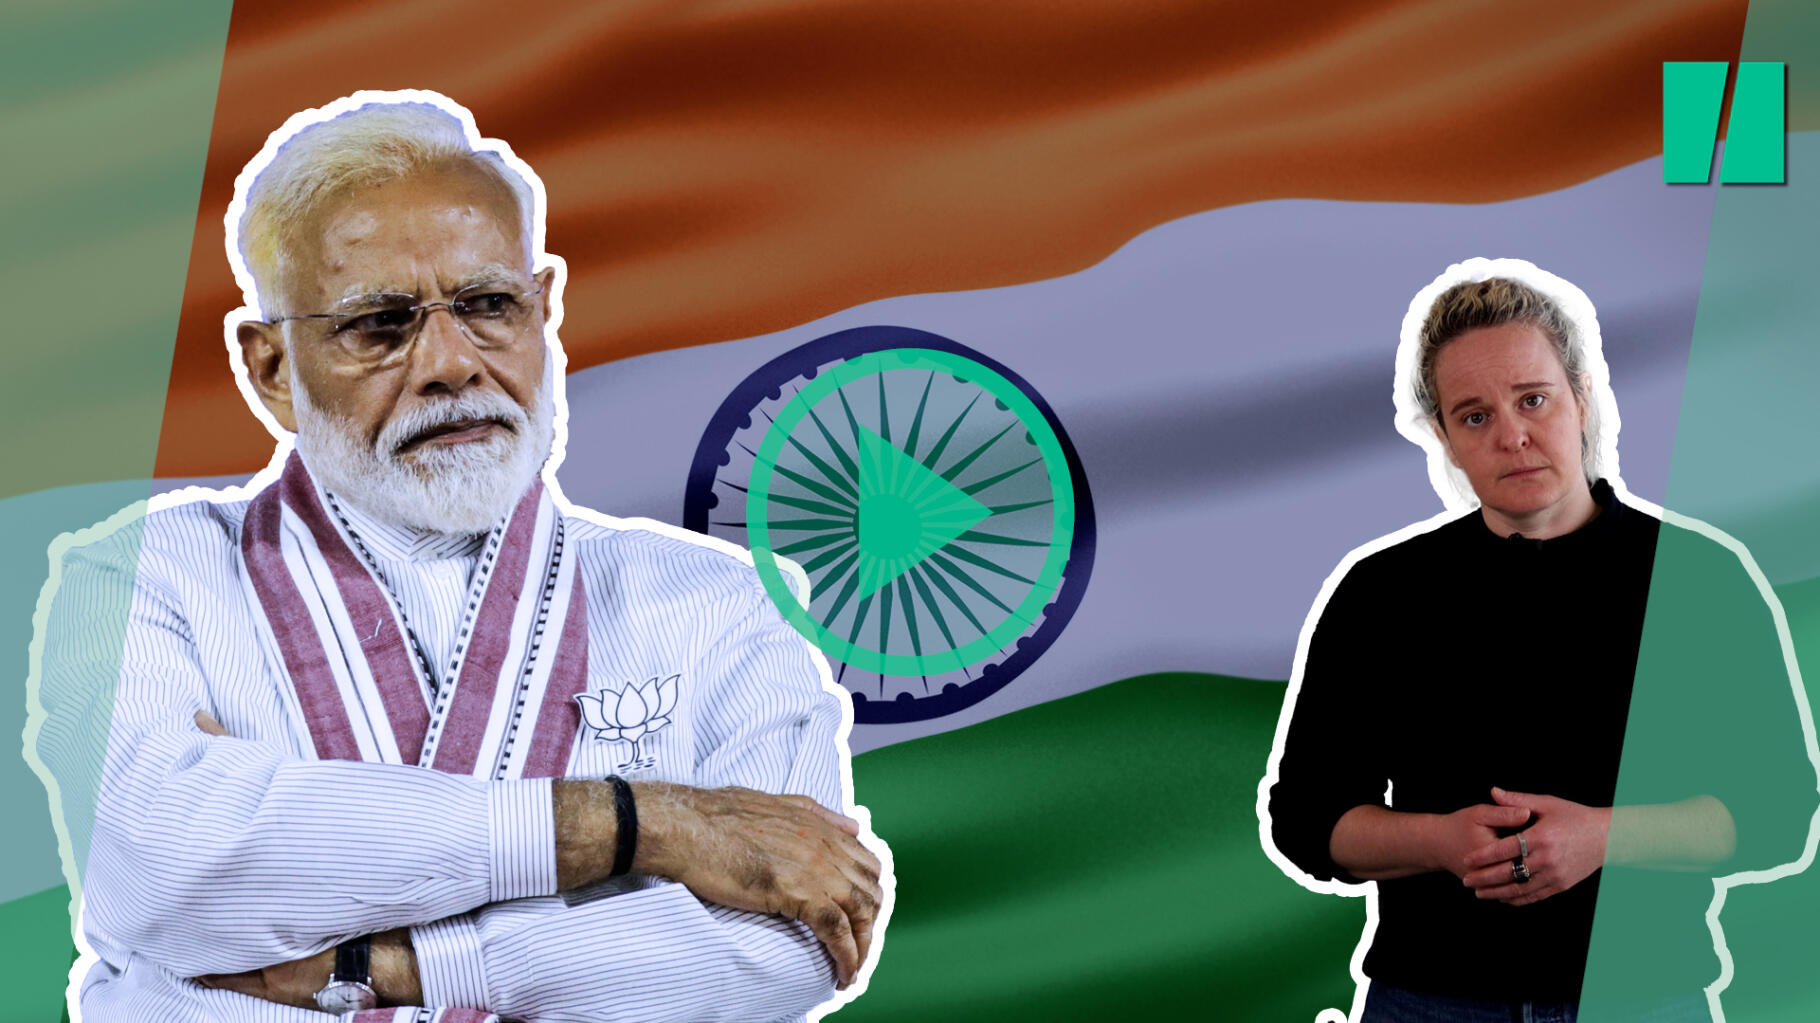 en Inde, des élections qui pourraient finir de faire basculer complètement le pays